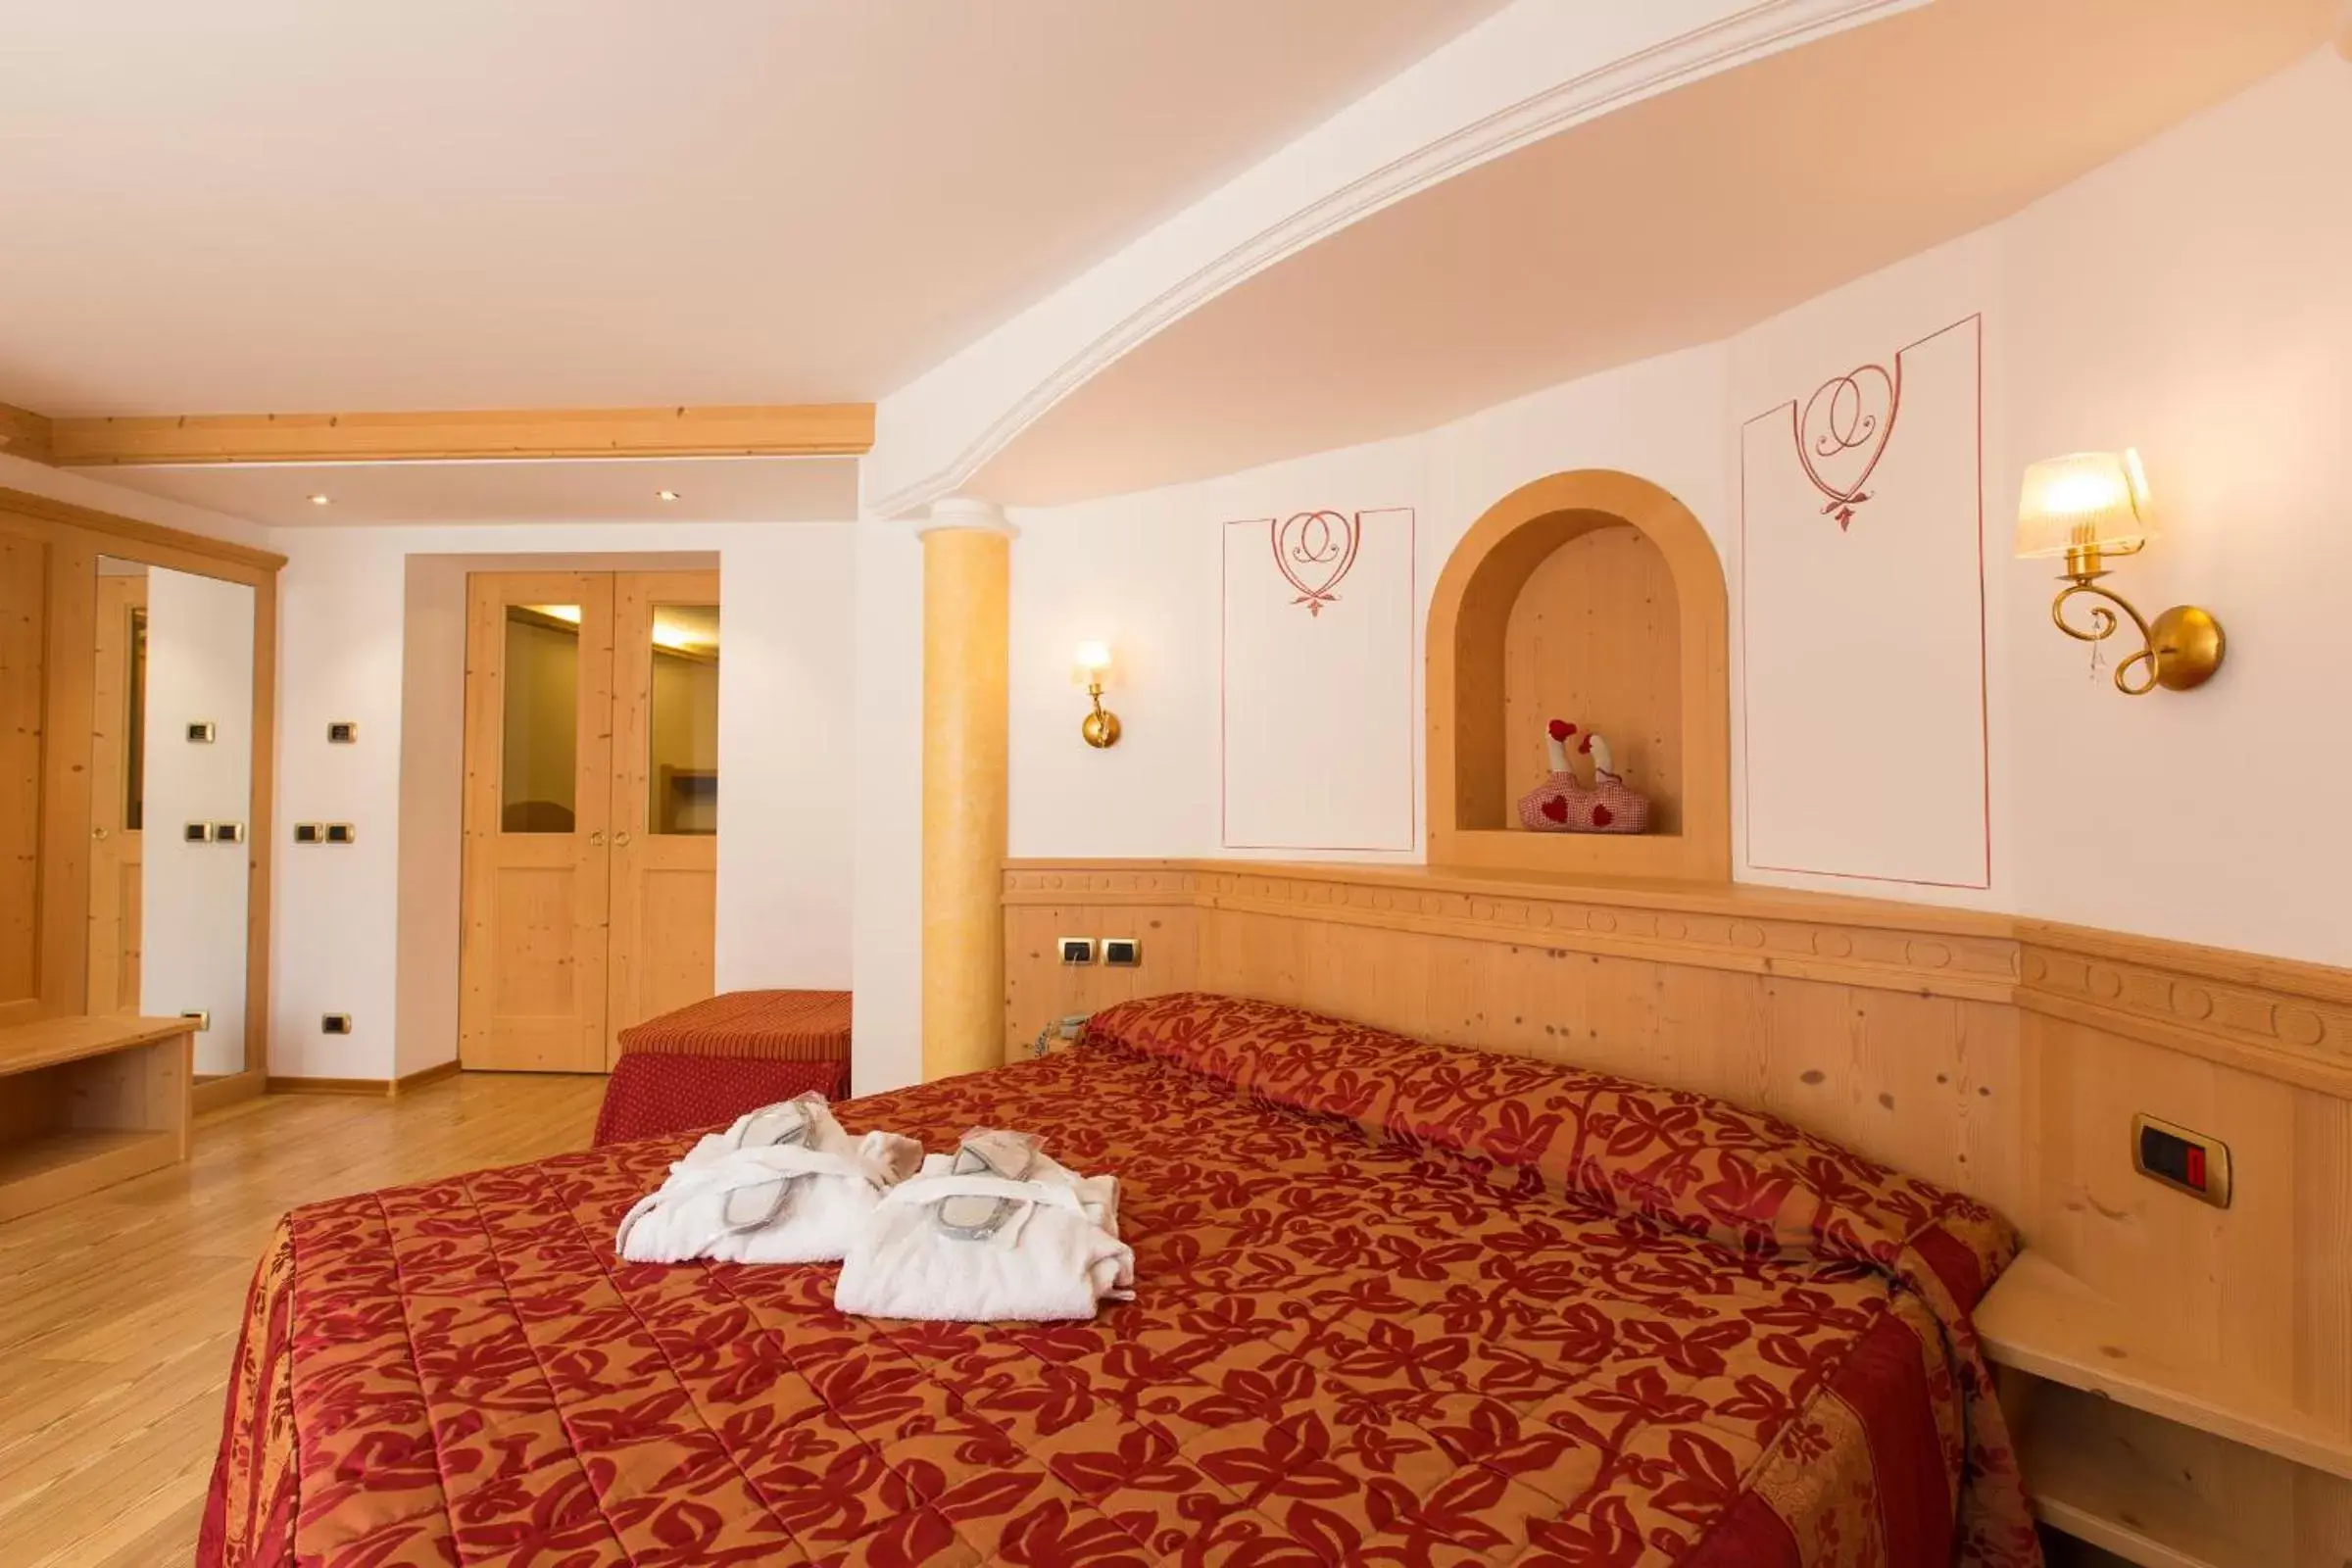 Bedroom, Room Photo in Hotel Cristina